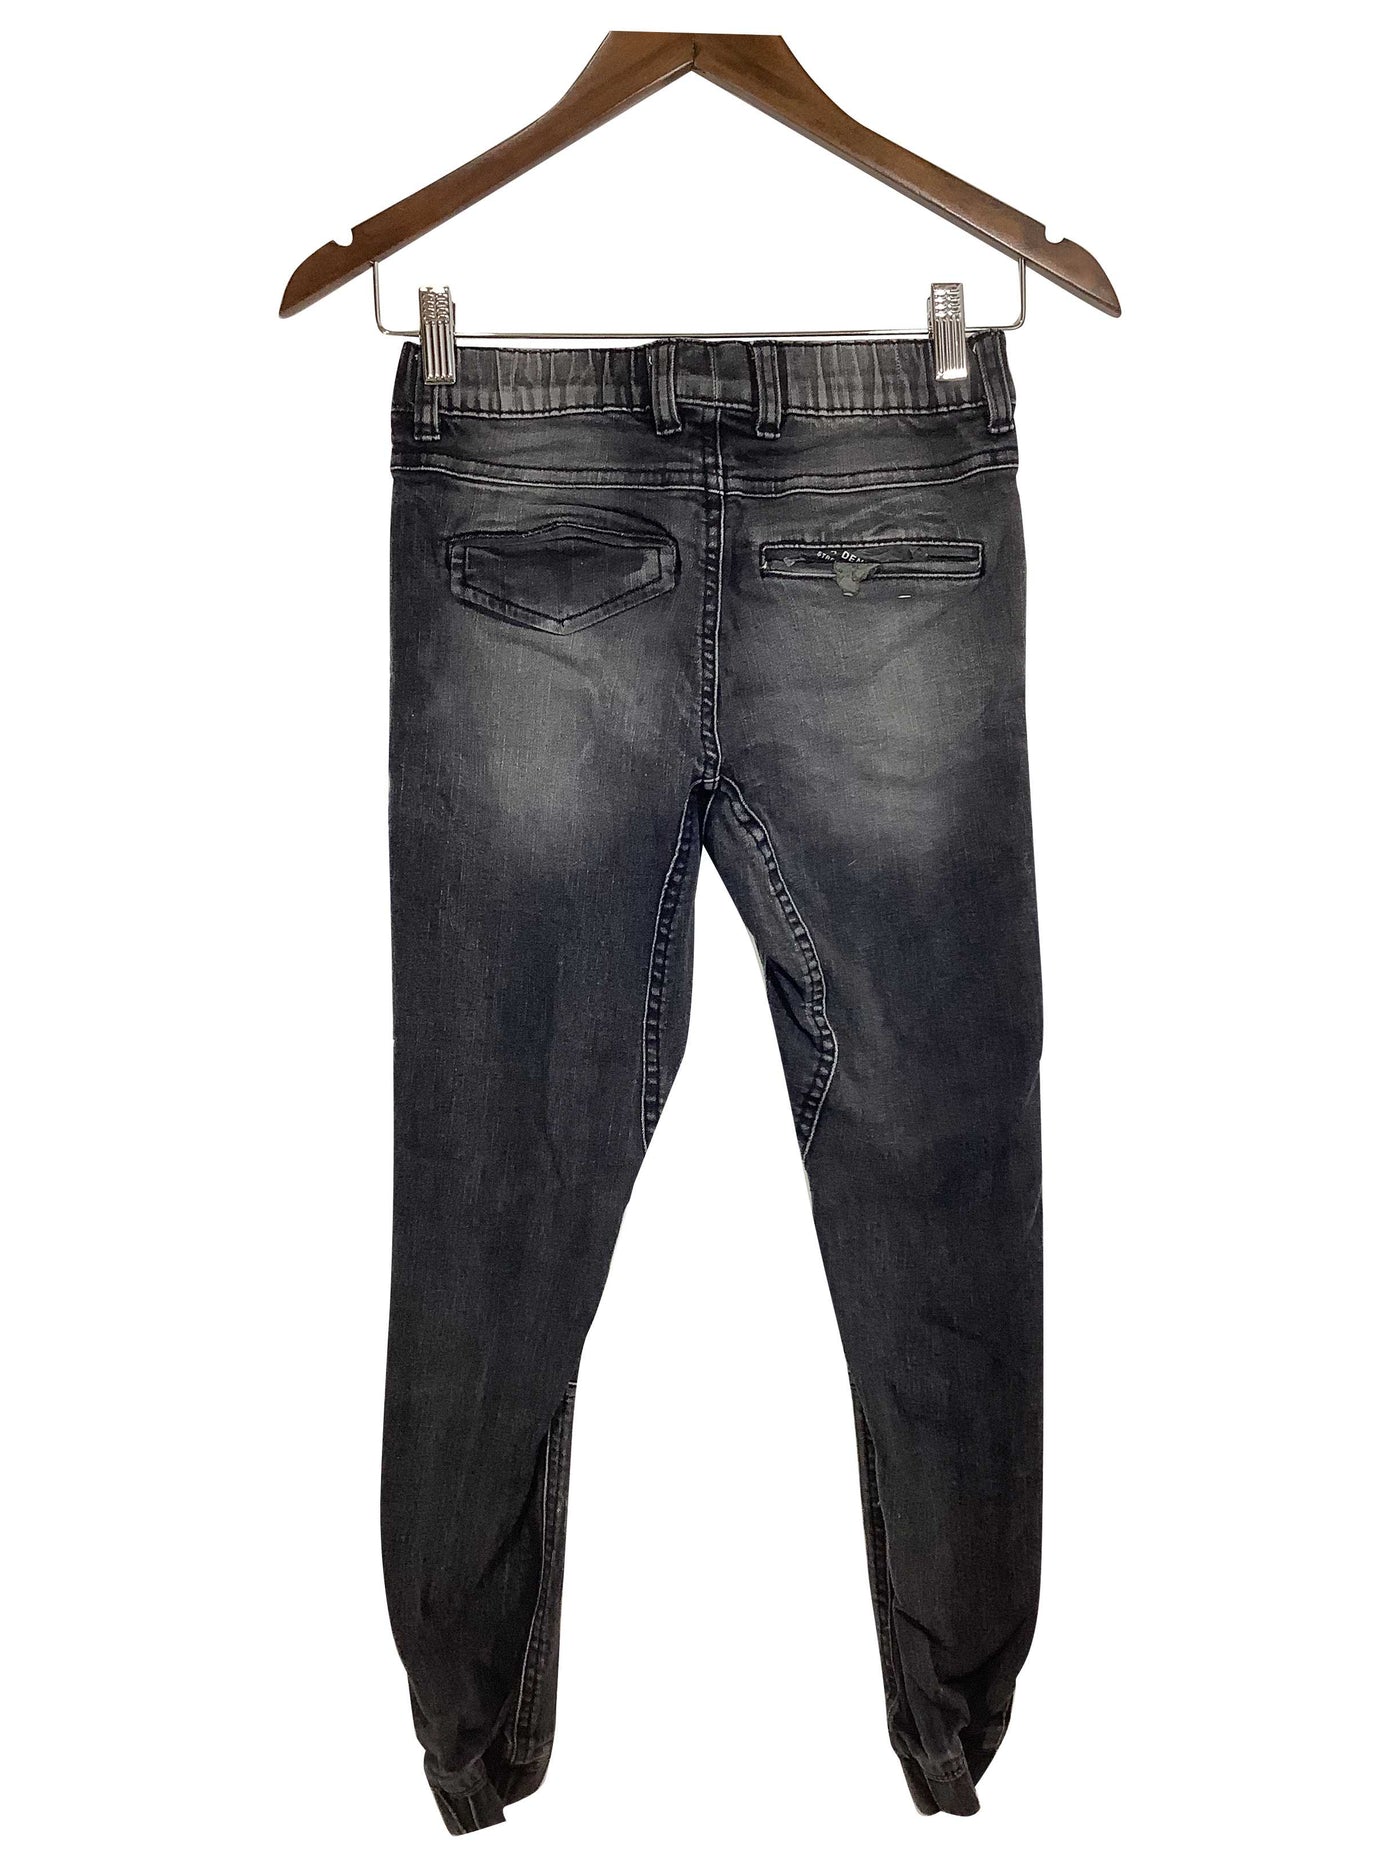 JEANIOLOGIE Regular fit Straight-legged Jeans in Black - Size M | 9.74 $ KOOP